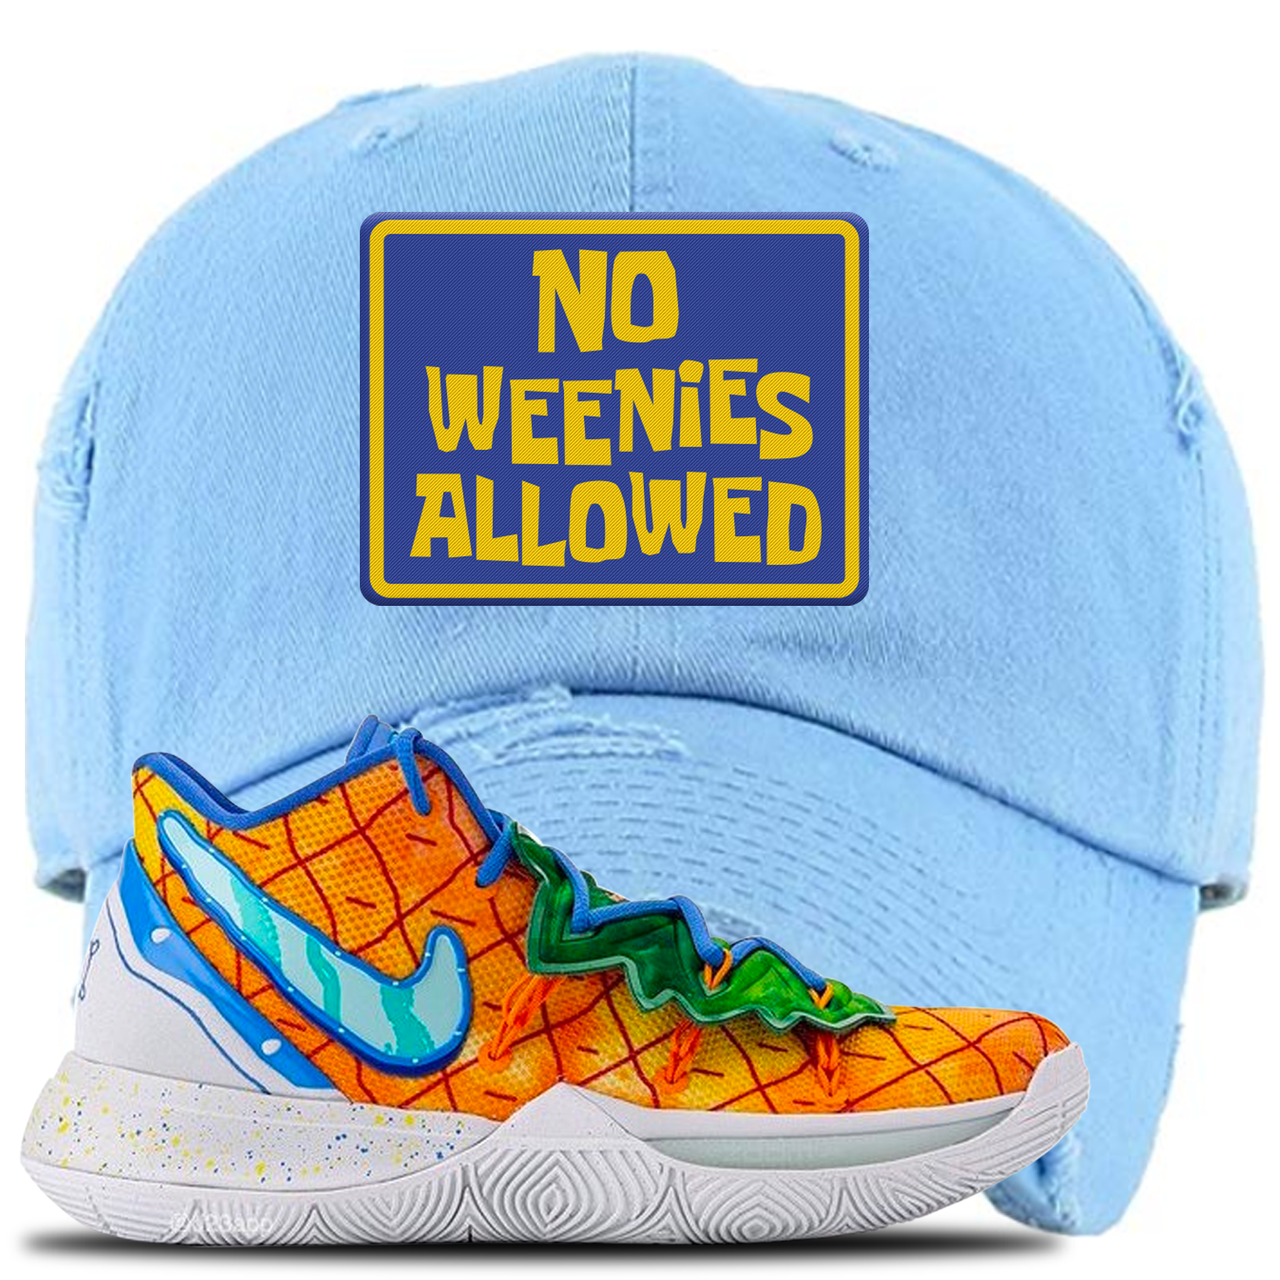 Kyrie 5 Pineapple House No Weenies Allowed Sky Blue Sneaker Hook Up Distressed Dad Hat